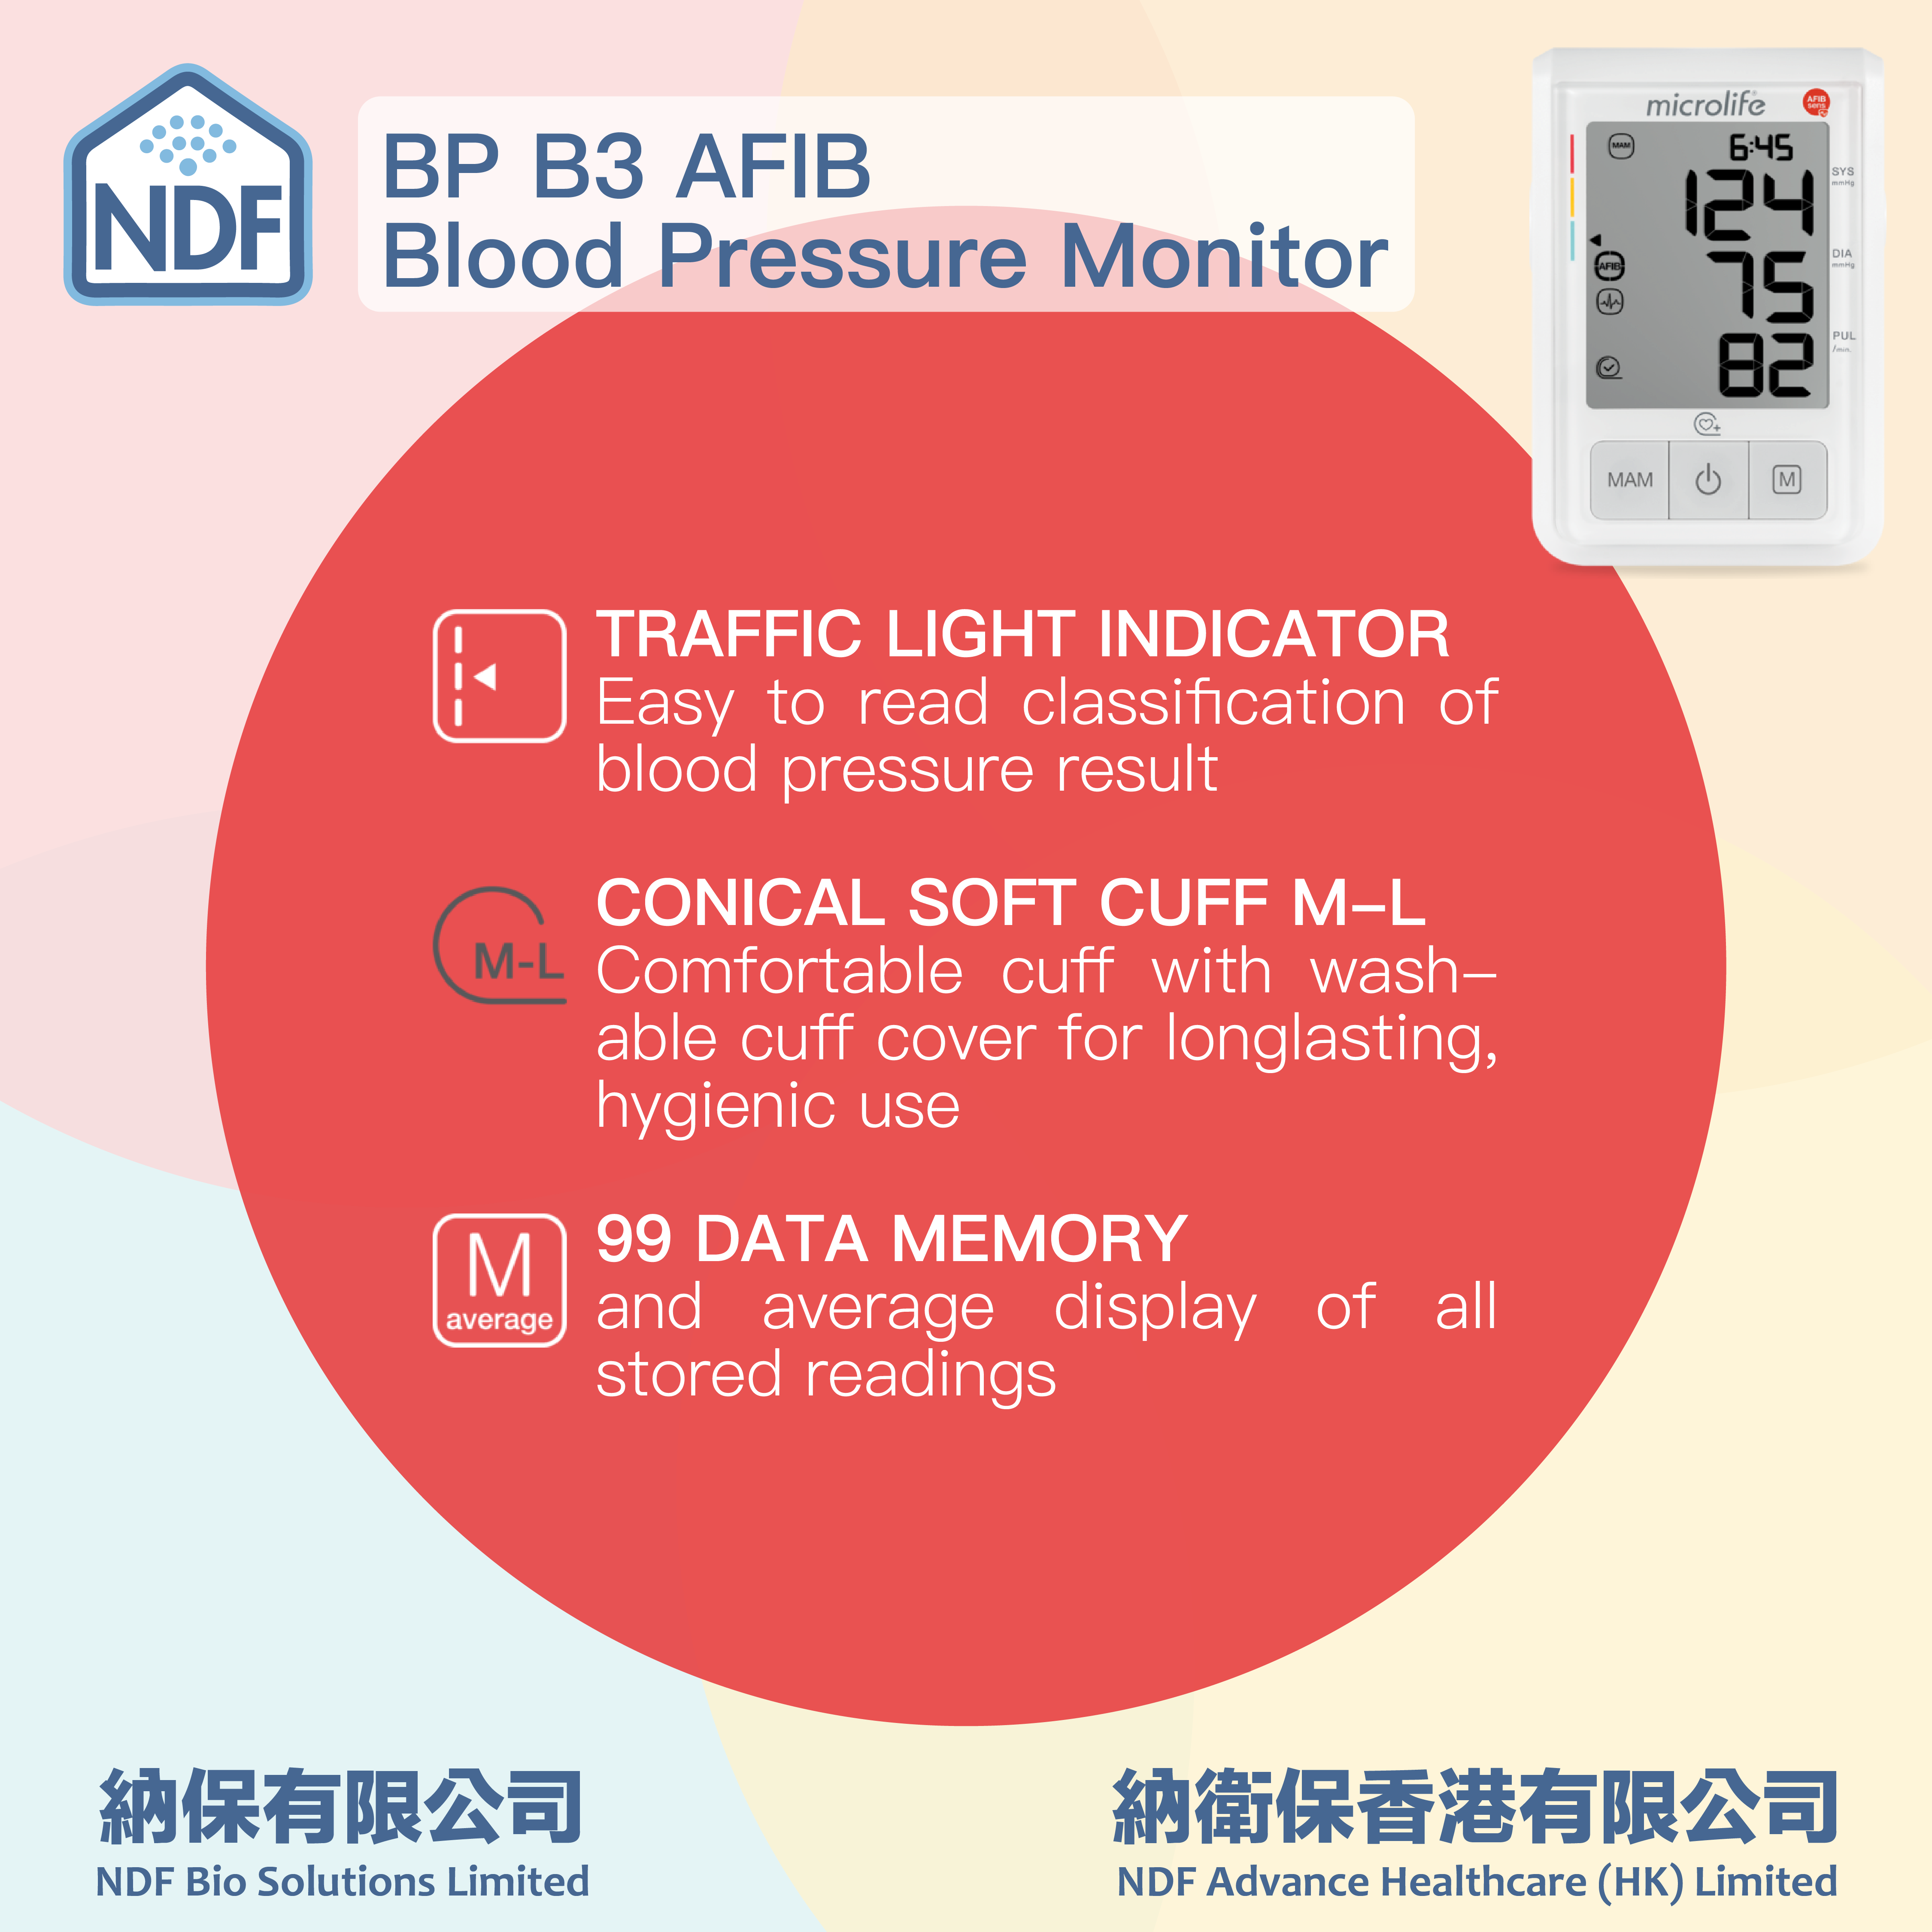 Microlife BP B3 AFIB 全自動臂式電子血壓計